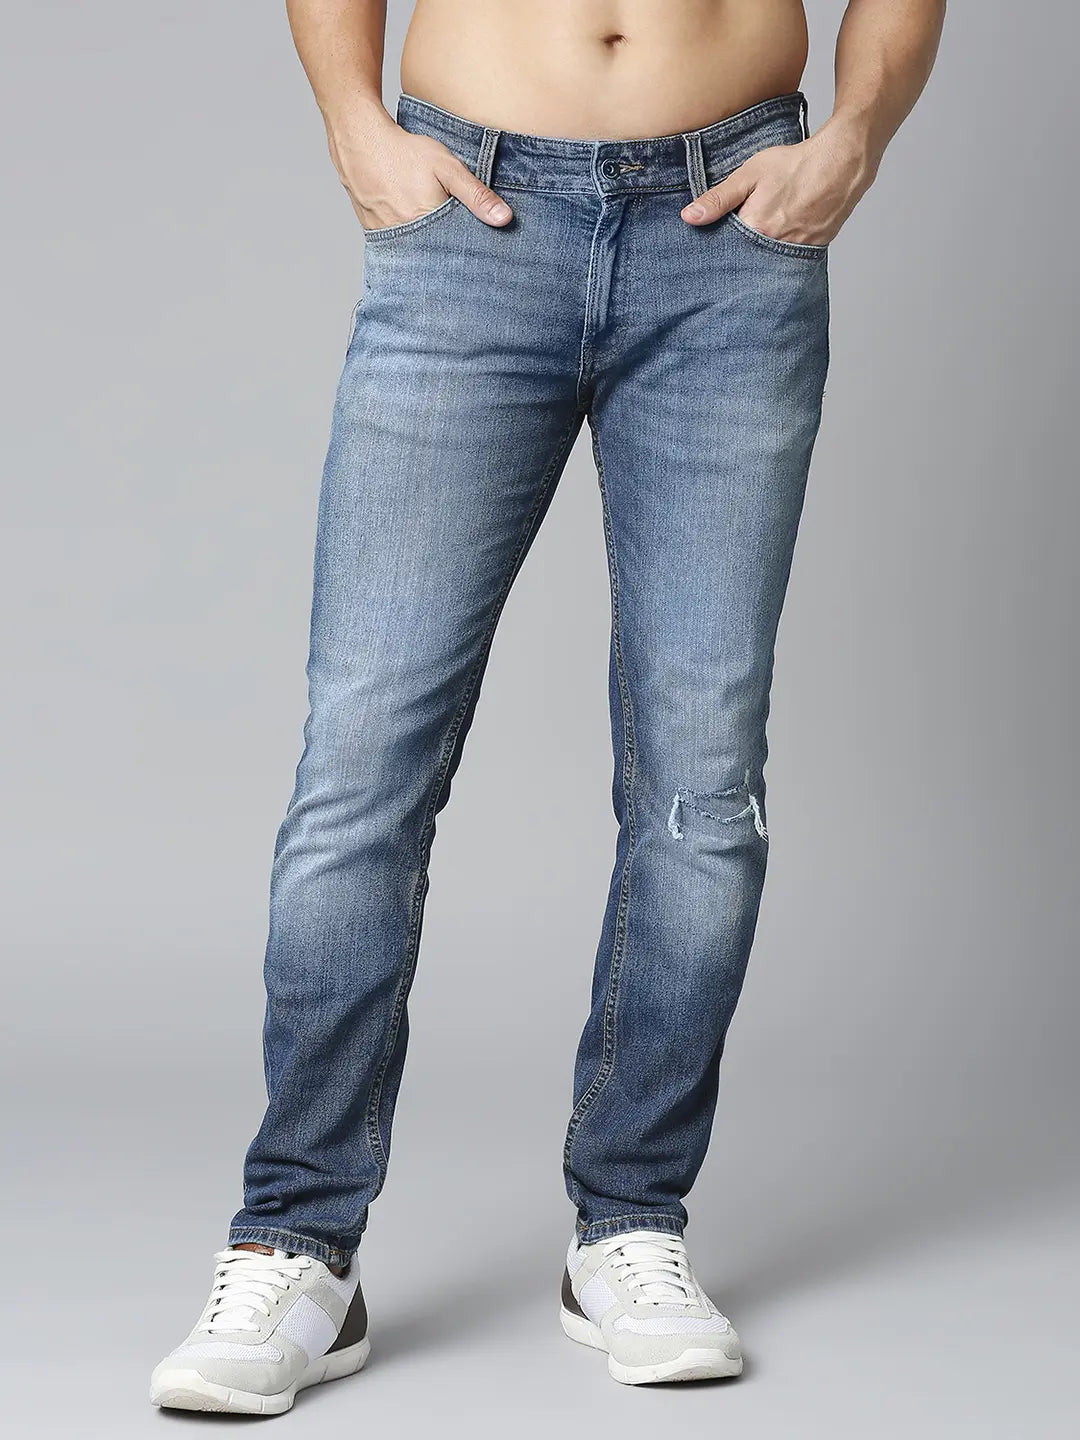 New Look | Shop New Look Coats, Jeans & Tops | ASOS